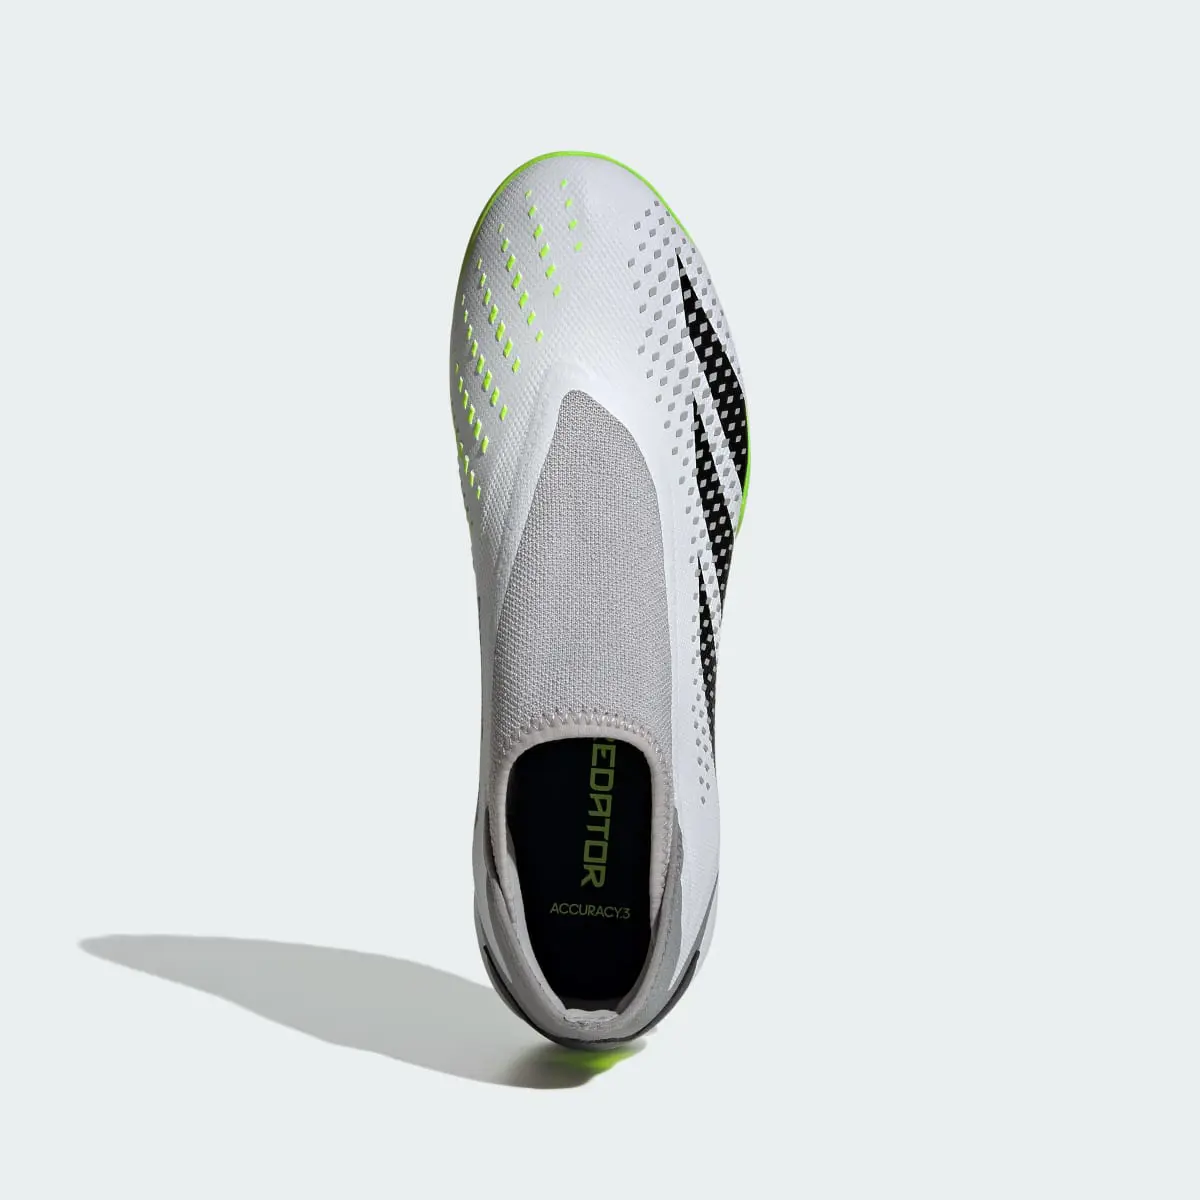 Adidas Zapatilla de fútbol Predator Accuracy.3 Laceless moqueta. 3